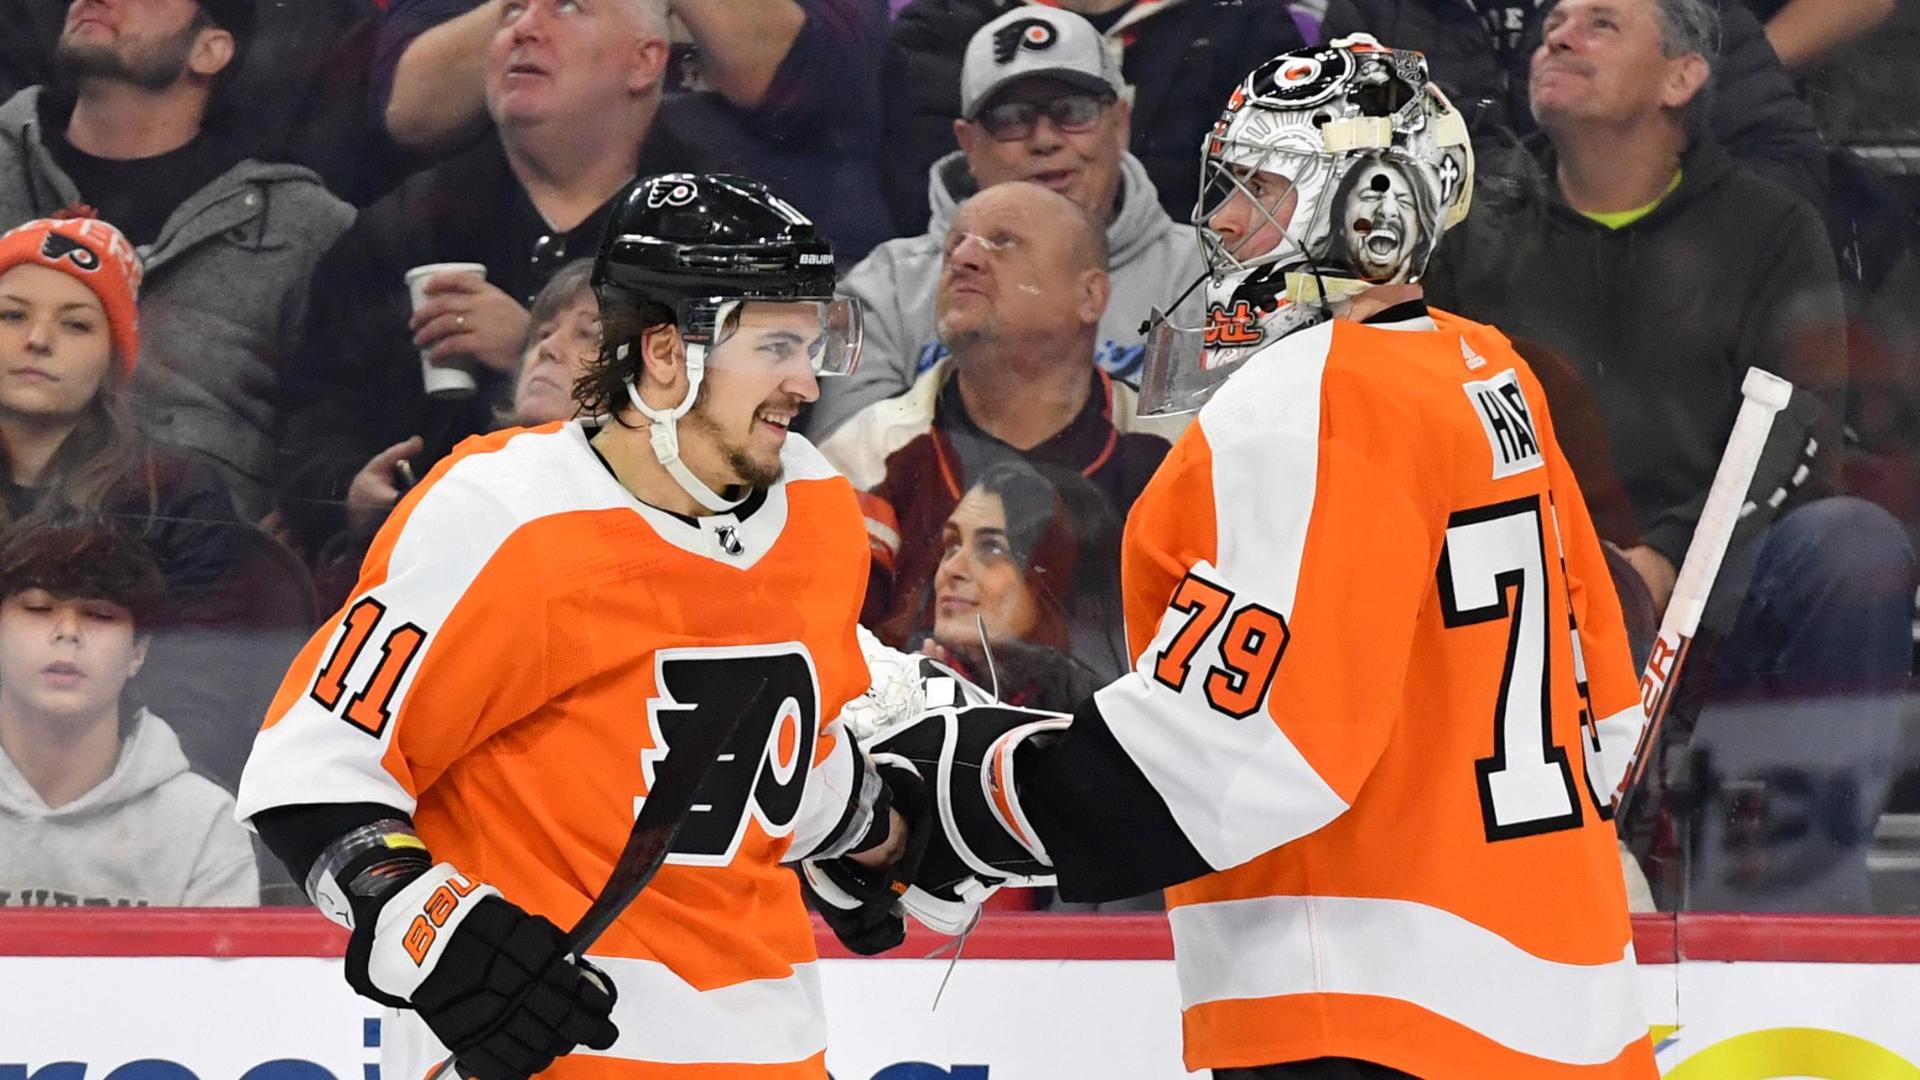 Konecny's hat trick leads surging Flyers past Capitals 5-3 - 6abc  Philadelphia